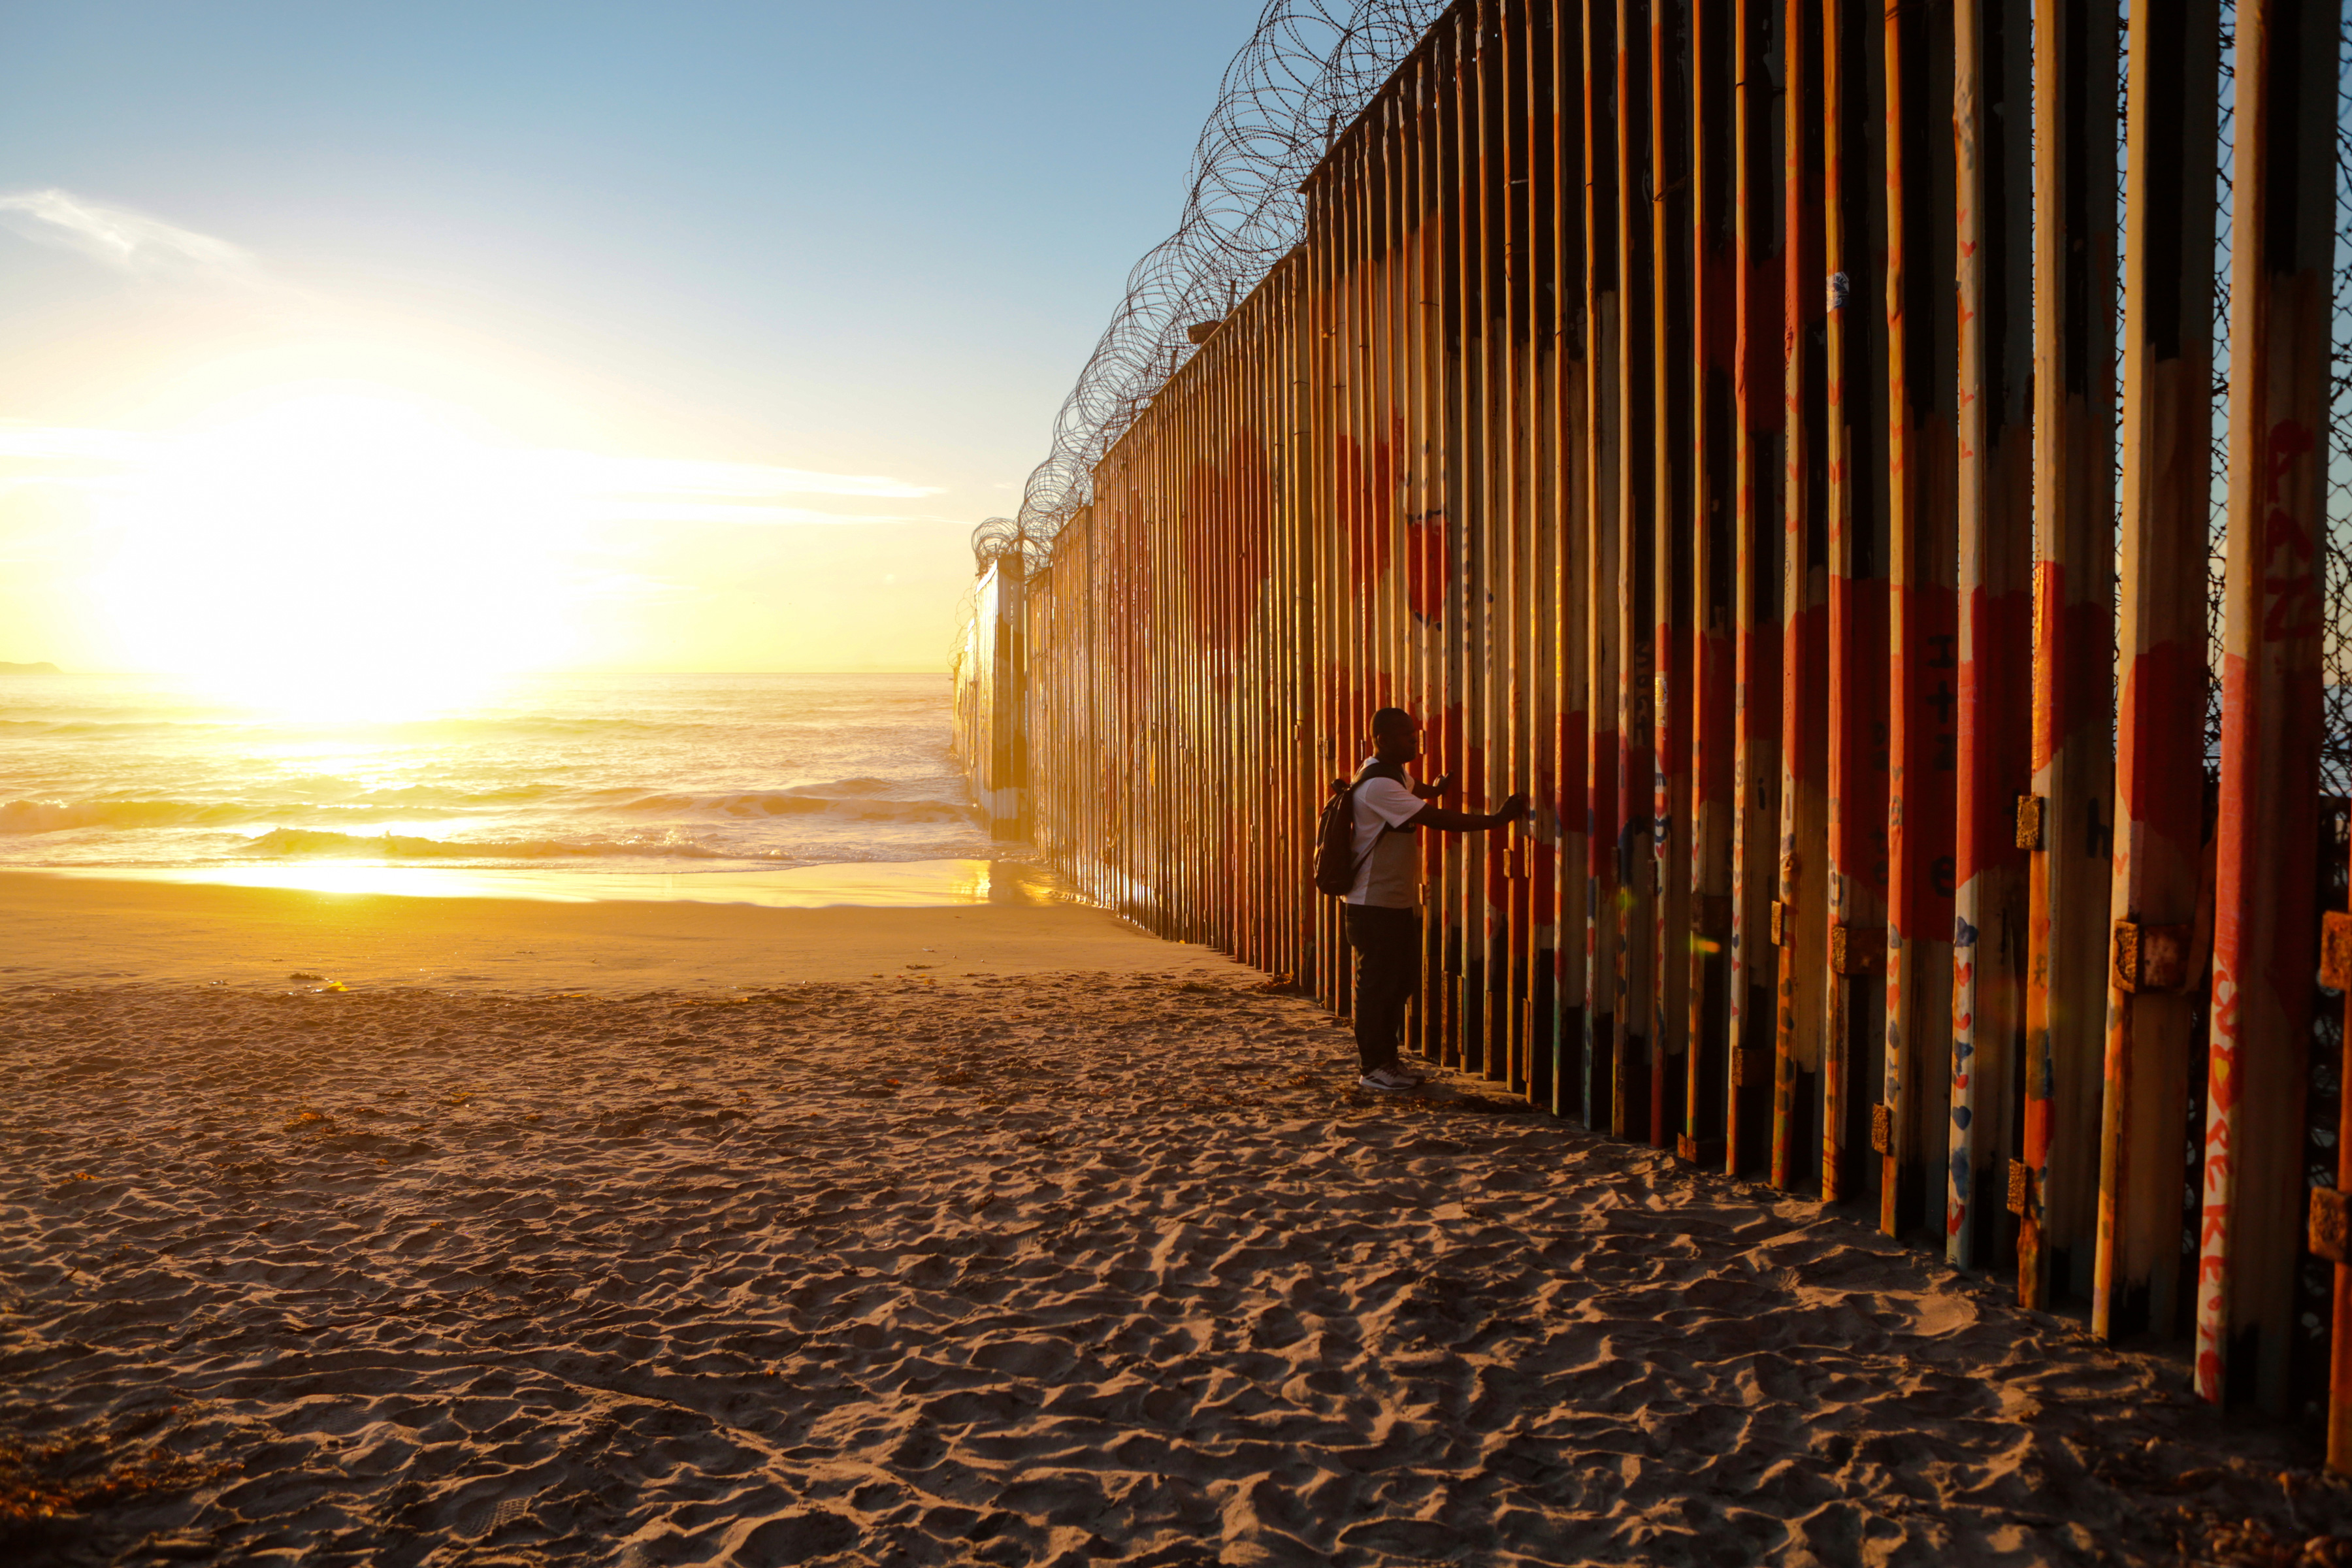 A&E estrena el documental “Esperanza en la frontera”